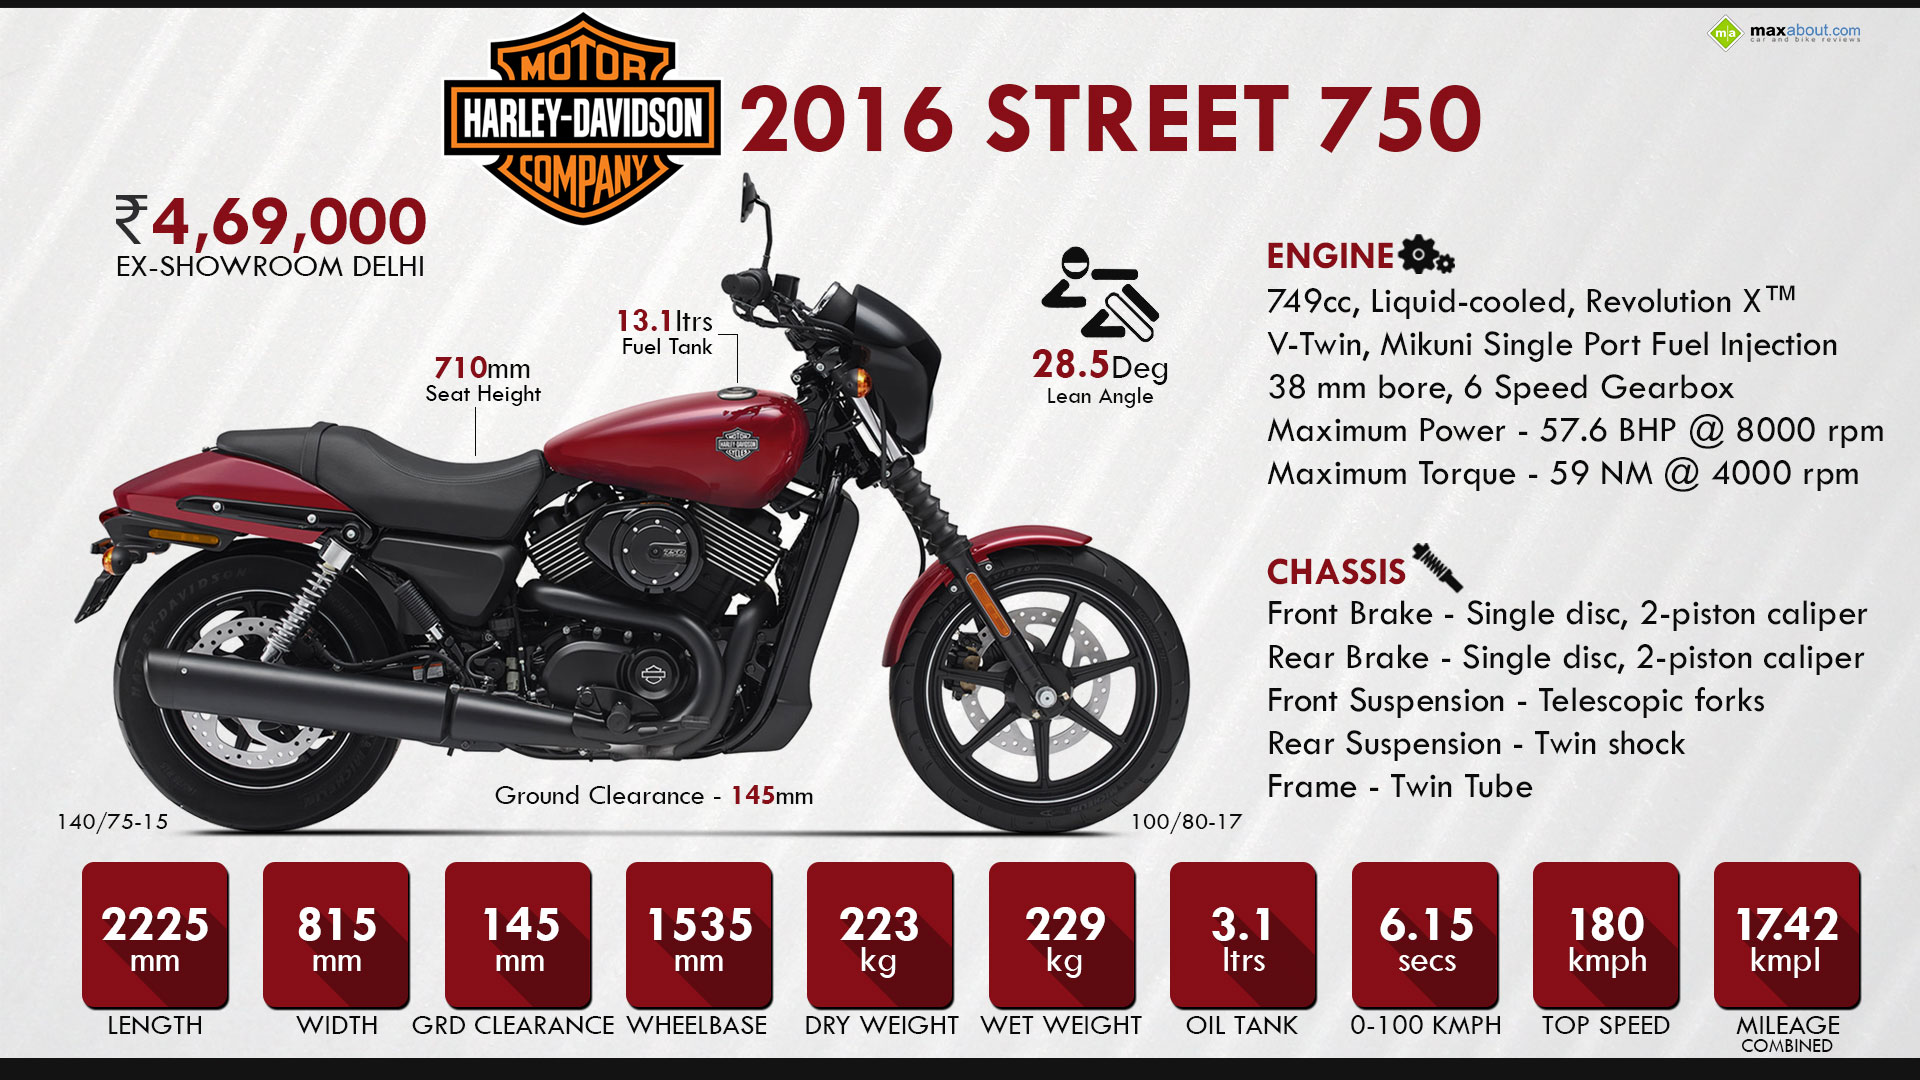 2016 Harley Davidson Street 750 Specs Promotion Off63